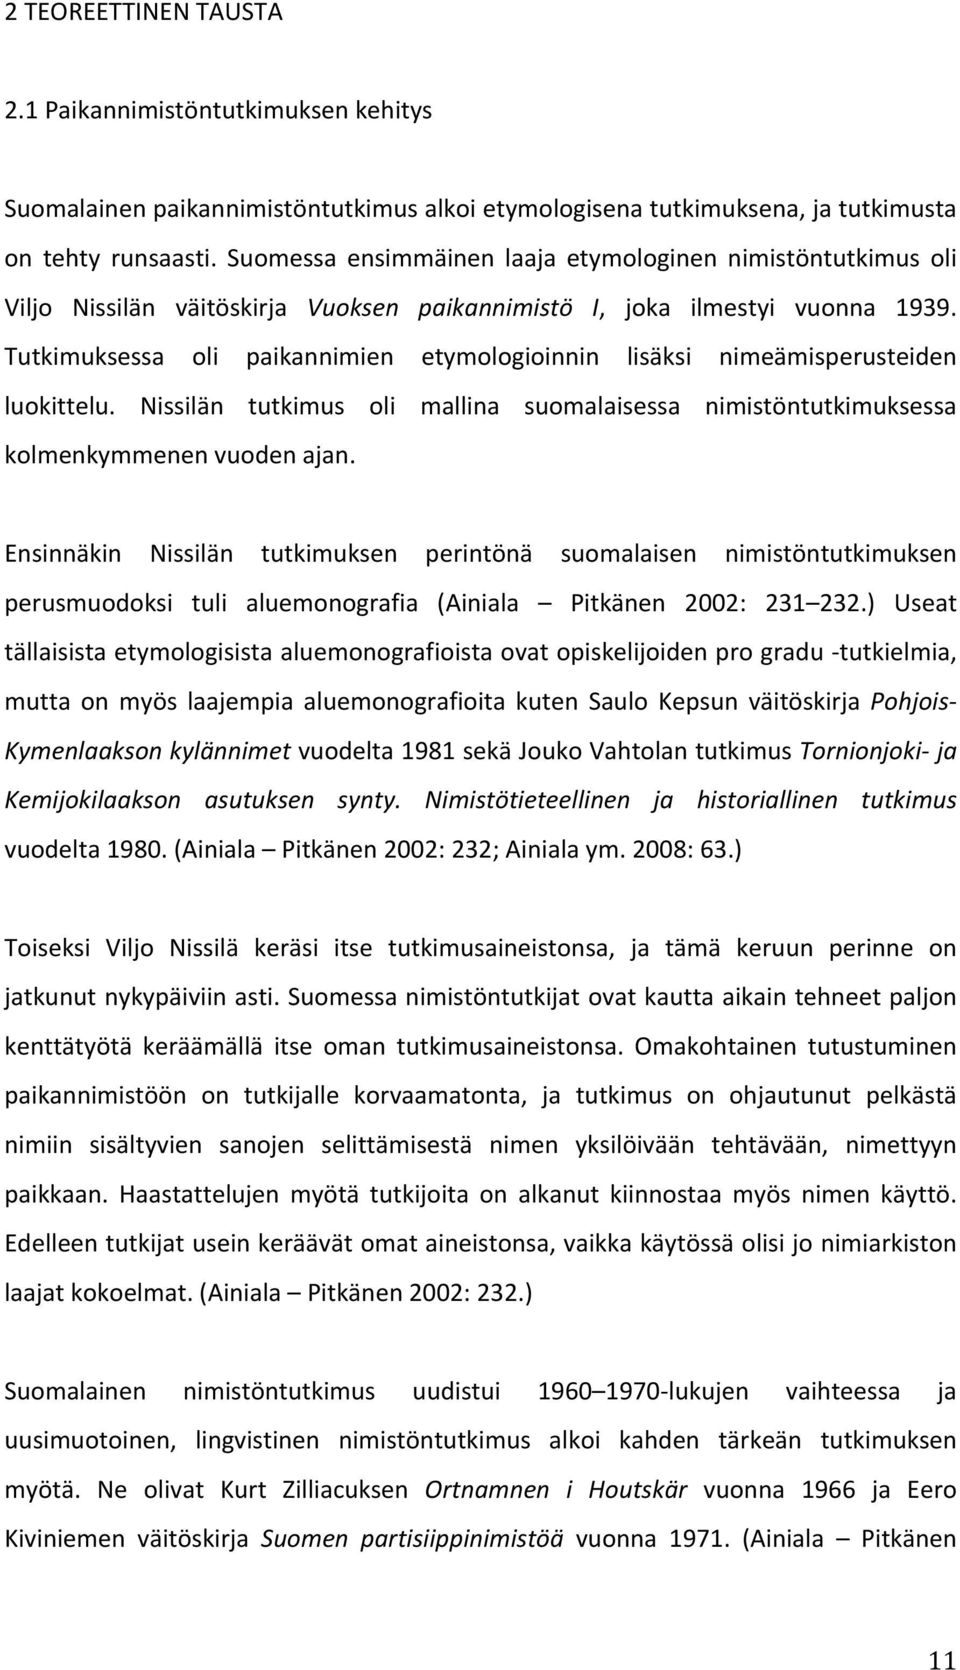 Tutkimuksessa oli paikannimien etymologioinnin lisäksi nimeämisperusteiden luokittelu. Nissilän tutkimus oli mallina suomalaisessa nimistöntutkimuksessa kolmenkymmenen vuoden ajan.